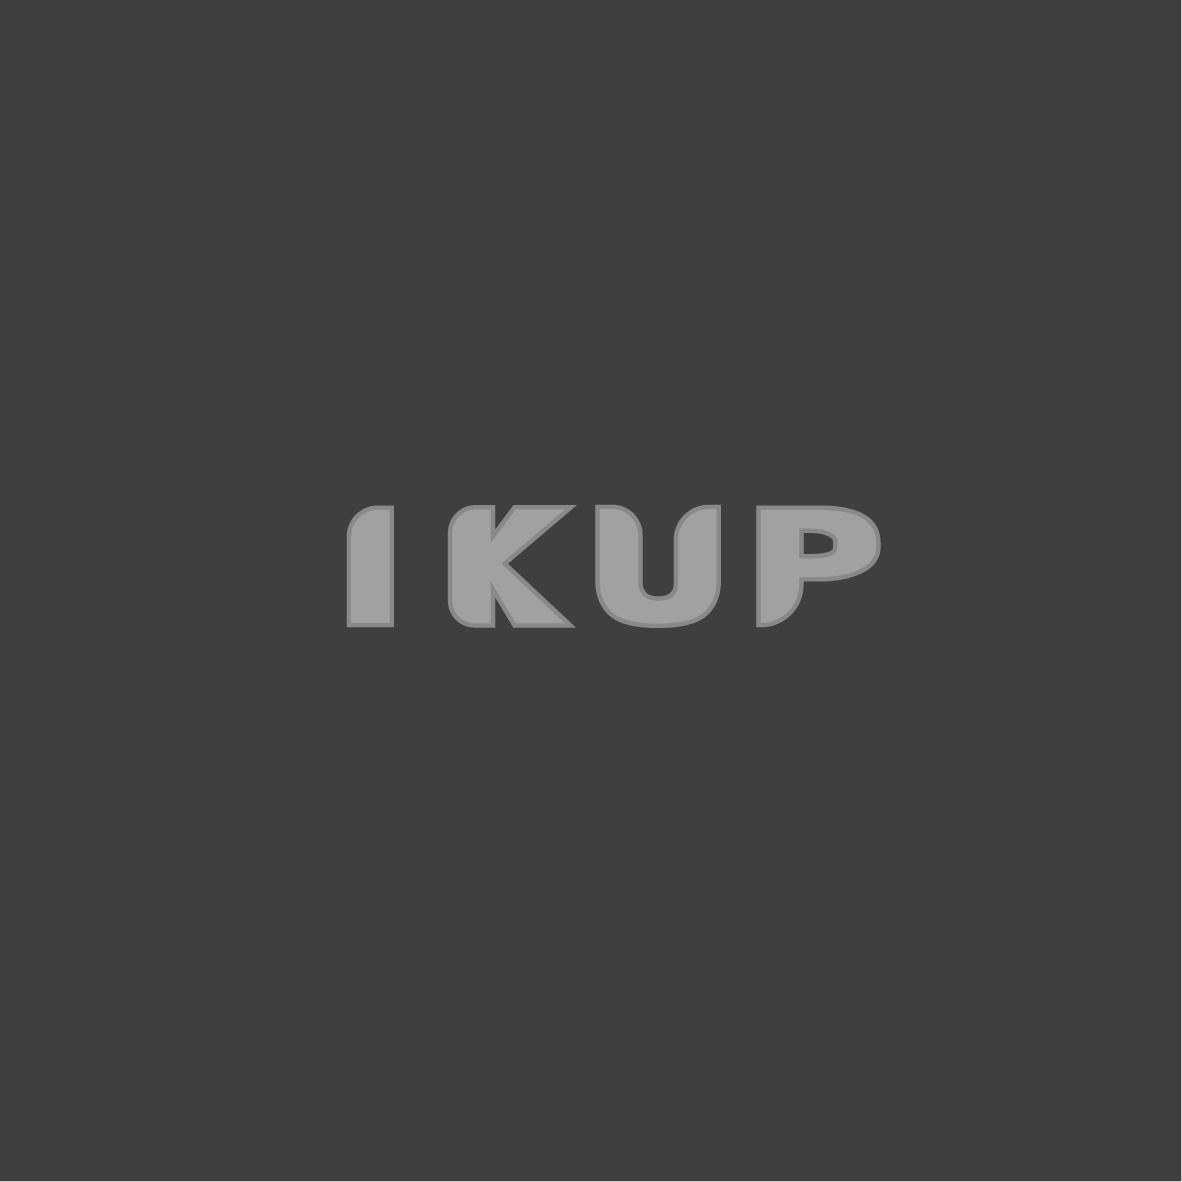 08类-工具器械IKUP商标转让